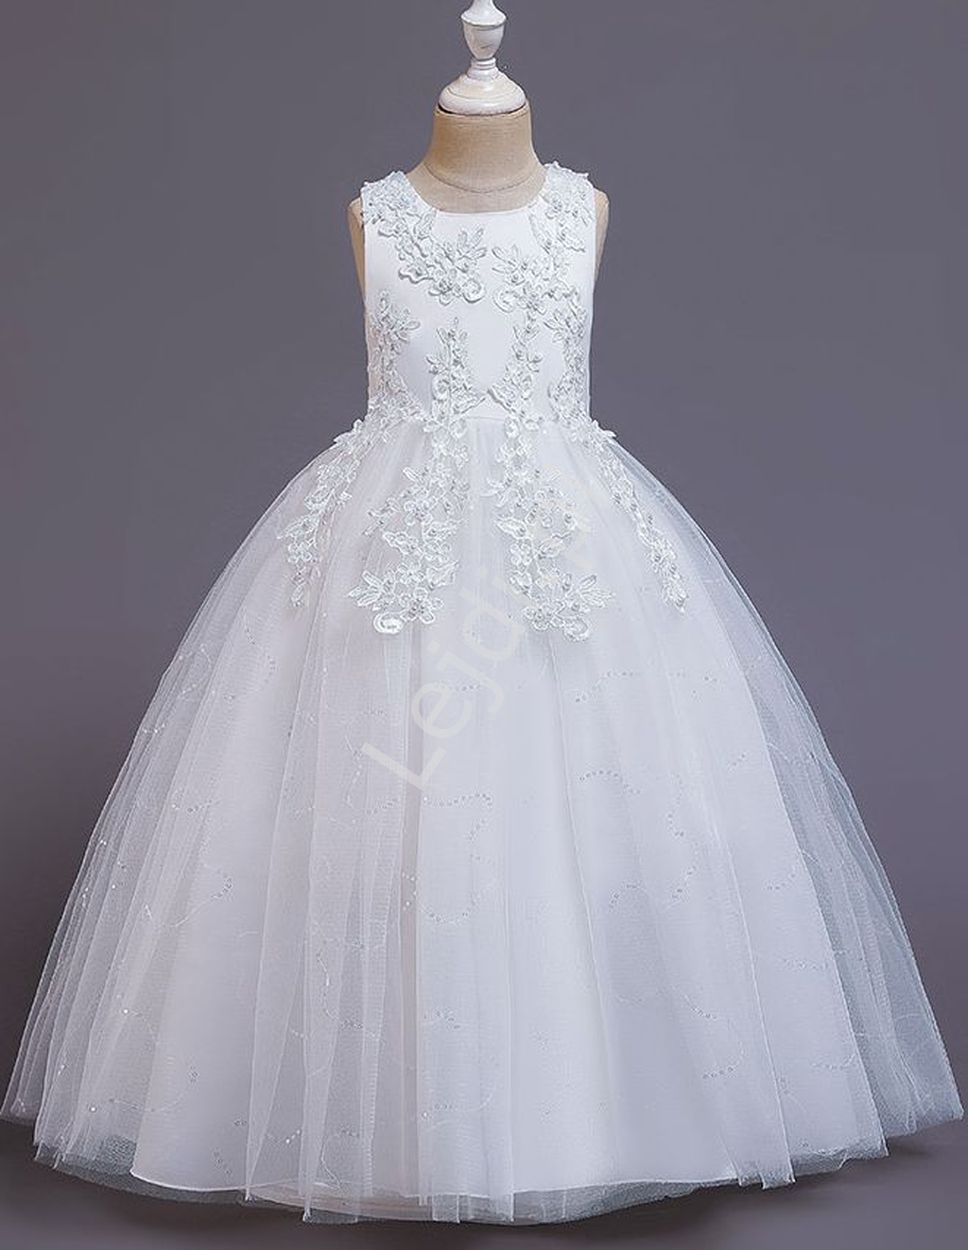 Biała sukienka komunijna z koronkowym haftem, elegancka sukienka dla dziewczynki